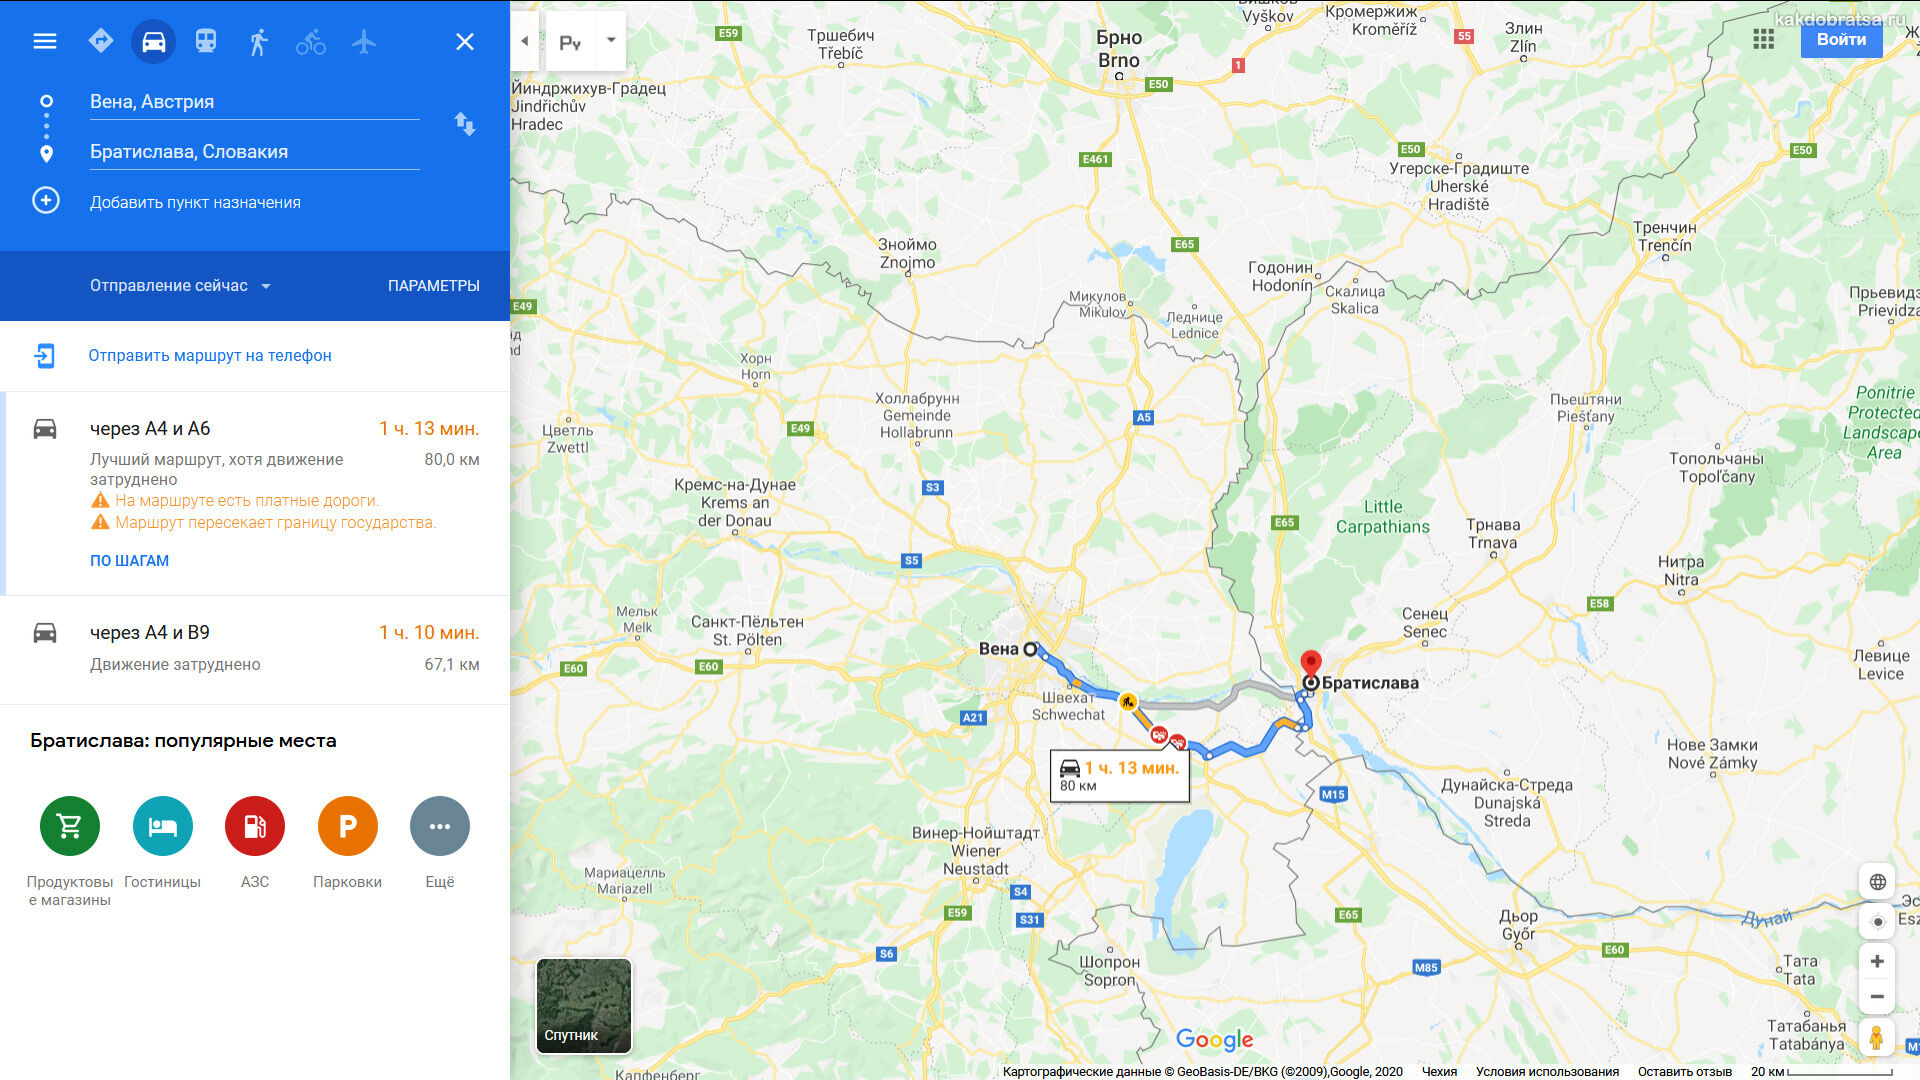 Как добраться из мюнхена до дюссельдорфа: поезд, автобус, машина. расстояние, цены на билеты и расписание 2021 на туристер.ру